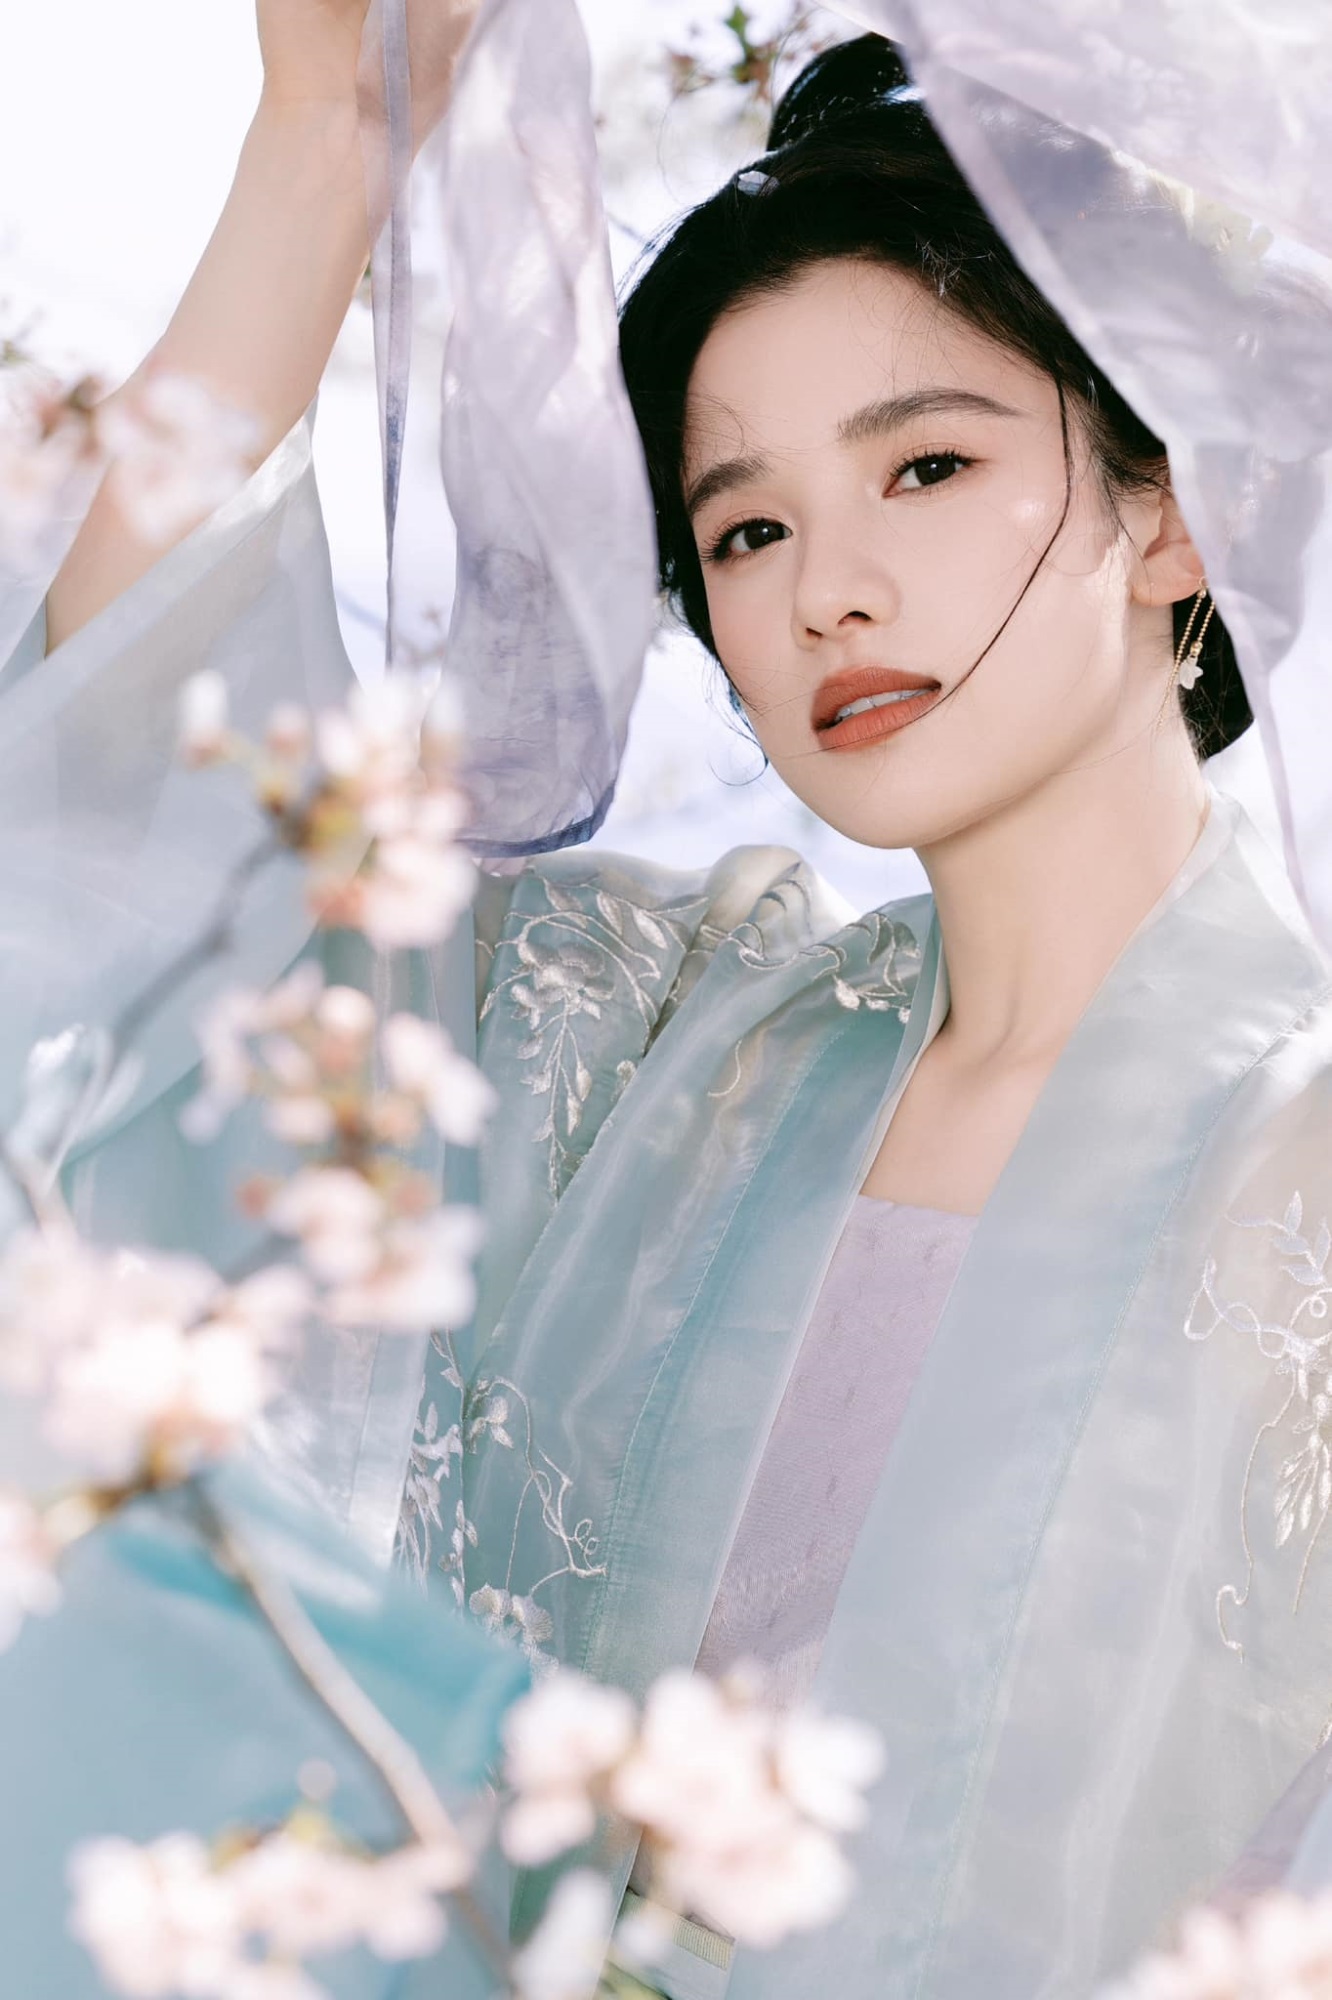 'Con gái cưng của Châu Tấn' Trương Tịnh Nghi 'gây bão' với bộ ảnh mỹ nhân cổ trang  - Ảnh 2